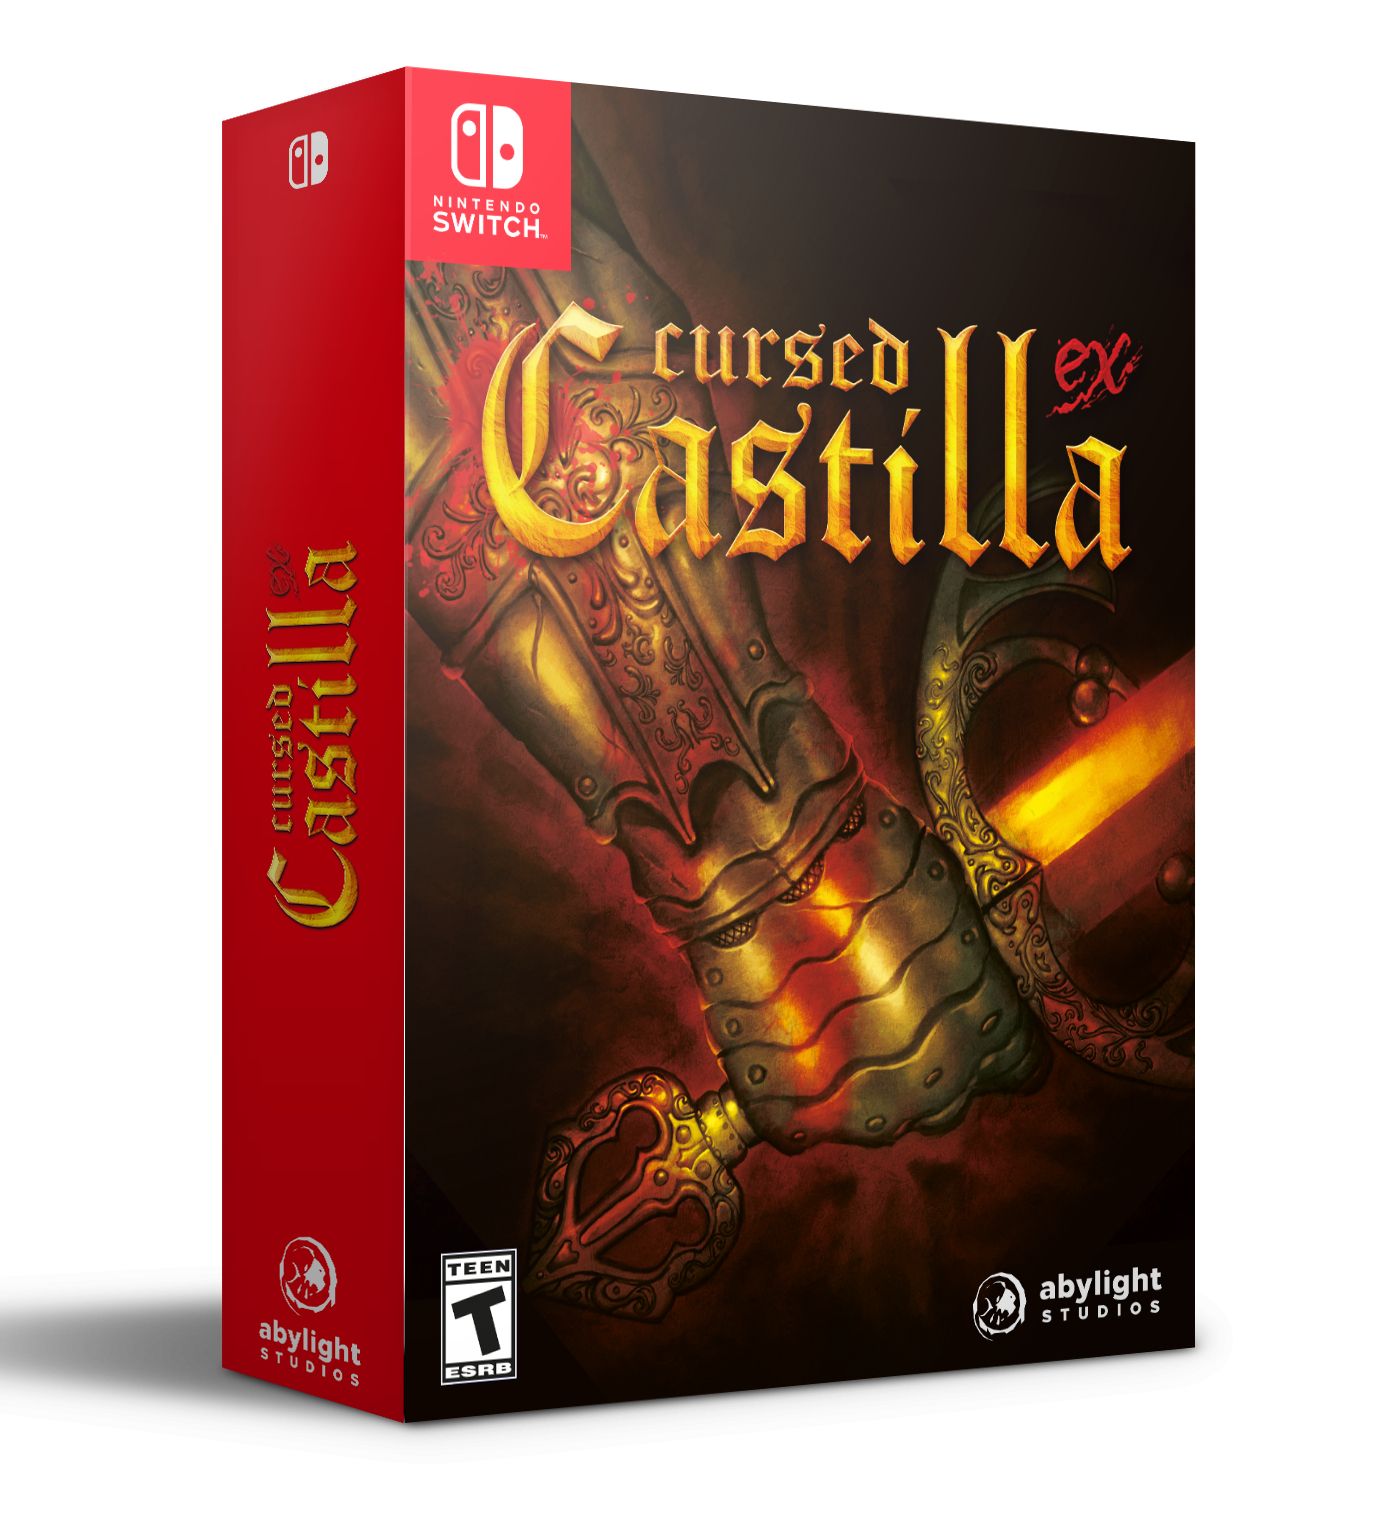 Cursed Castilla Ex - Edition Collector